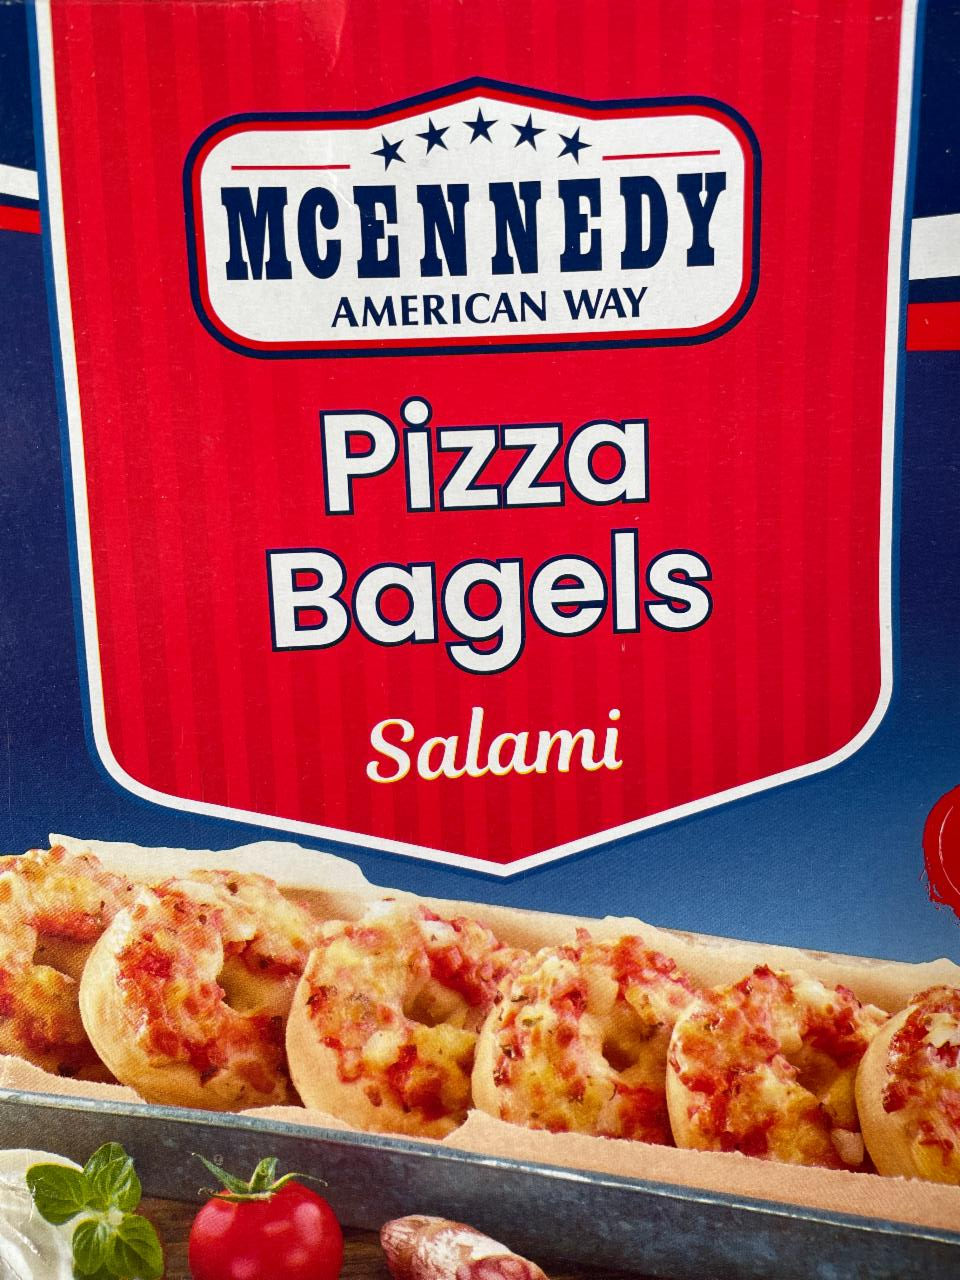 Pizza Bagels Salami McEnnedy - kalórie, kJ a nutričné hodnoty